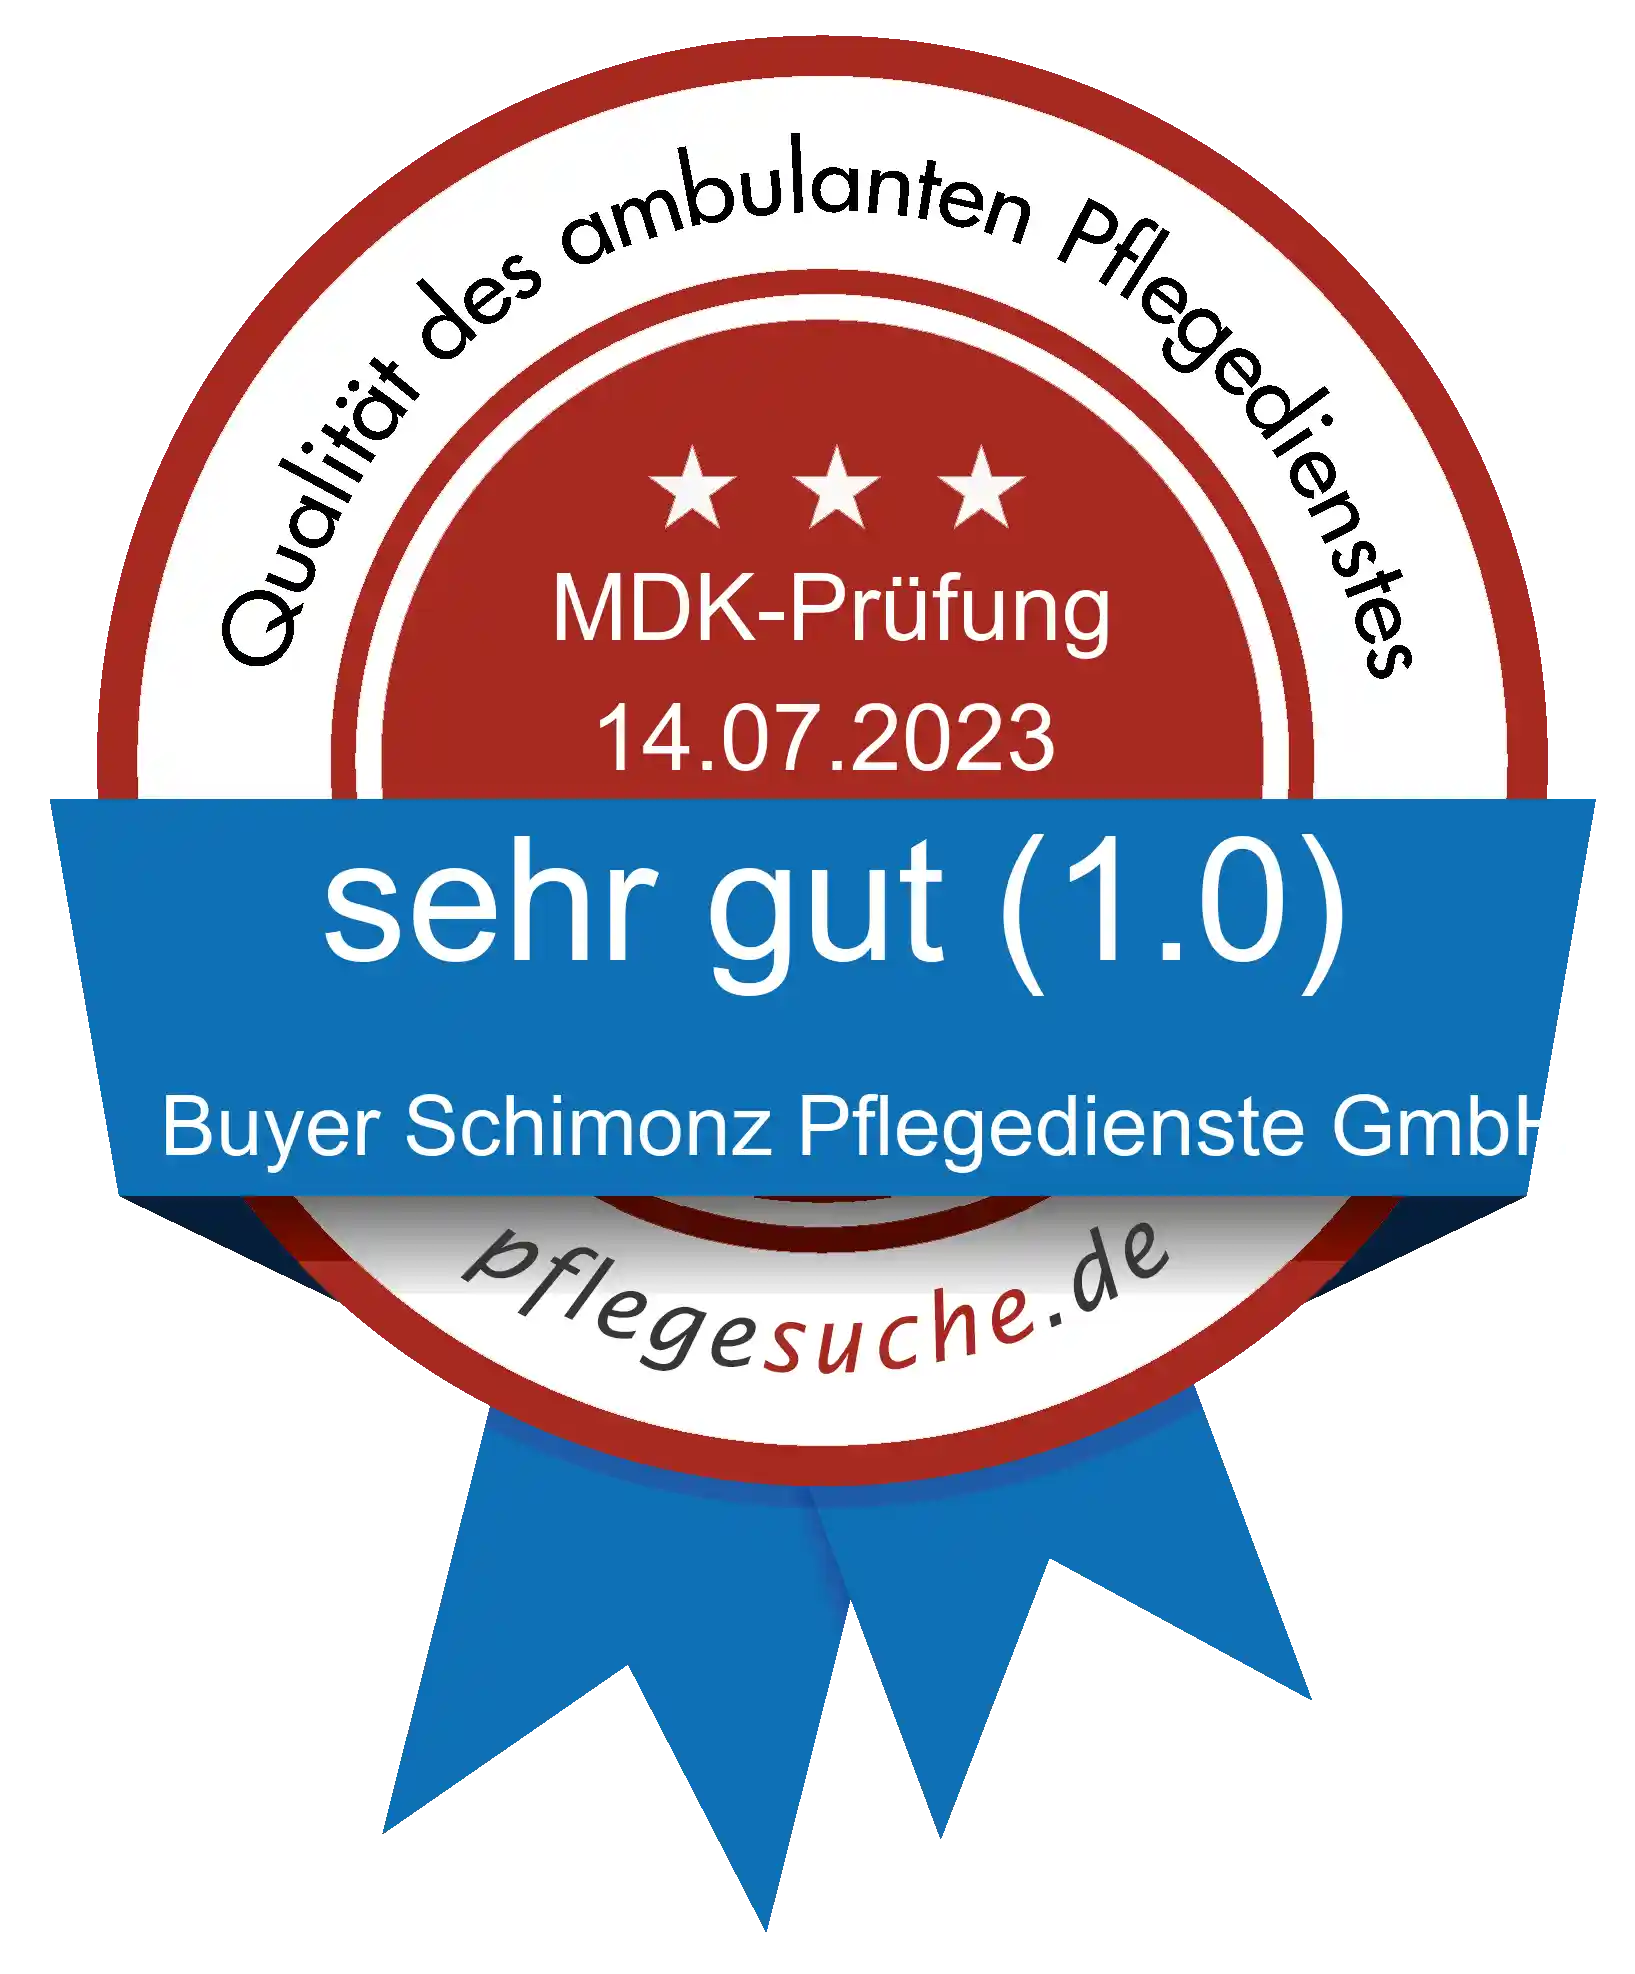 Siegel Benotung: Buyer Schimonz Pflegedienste GmbH